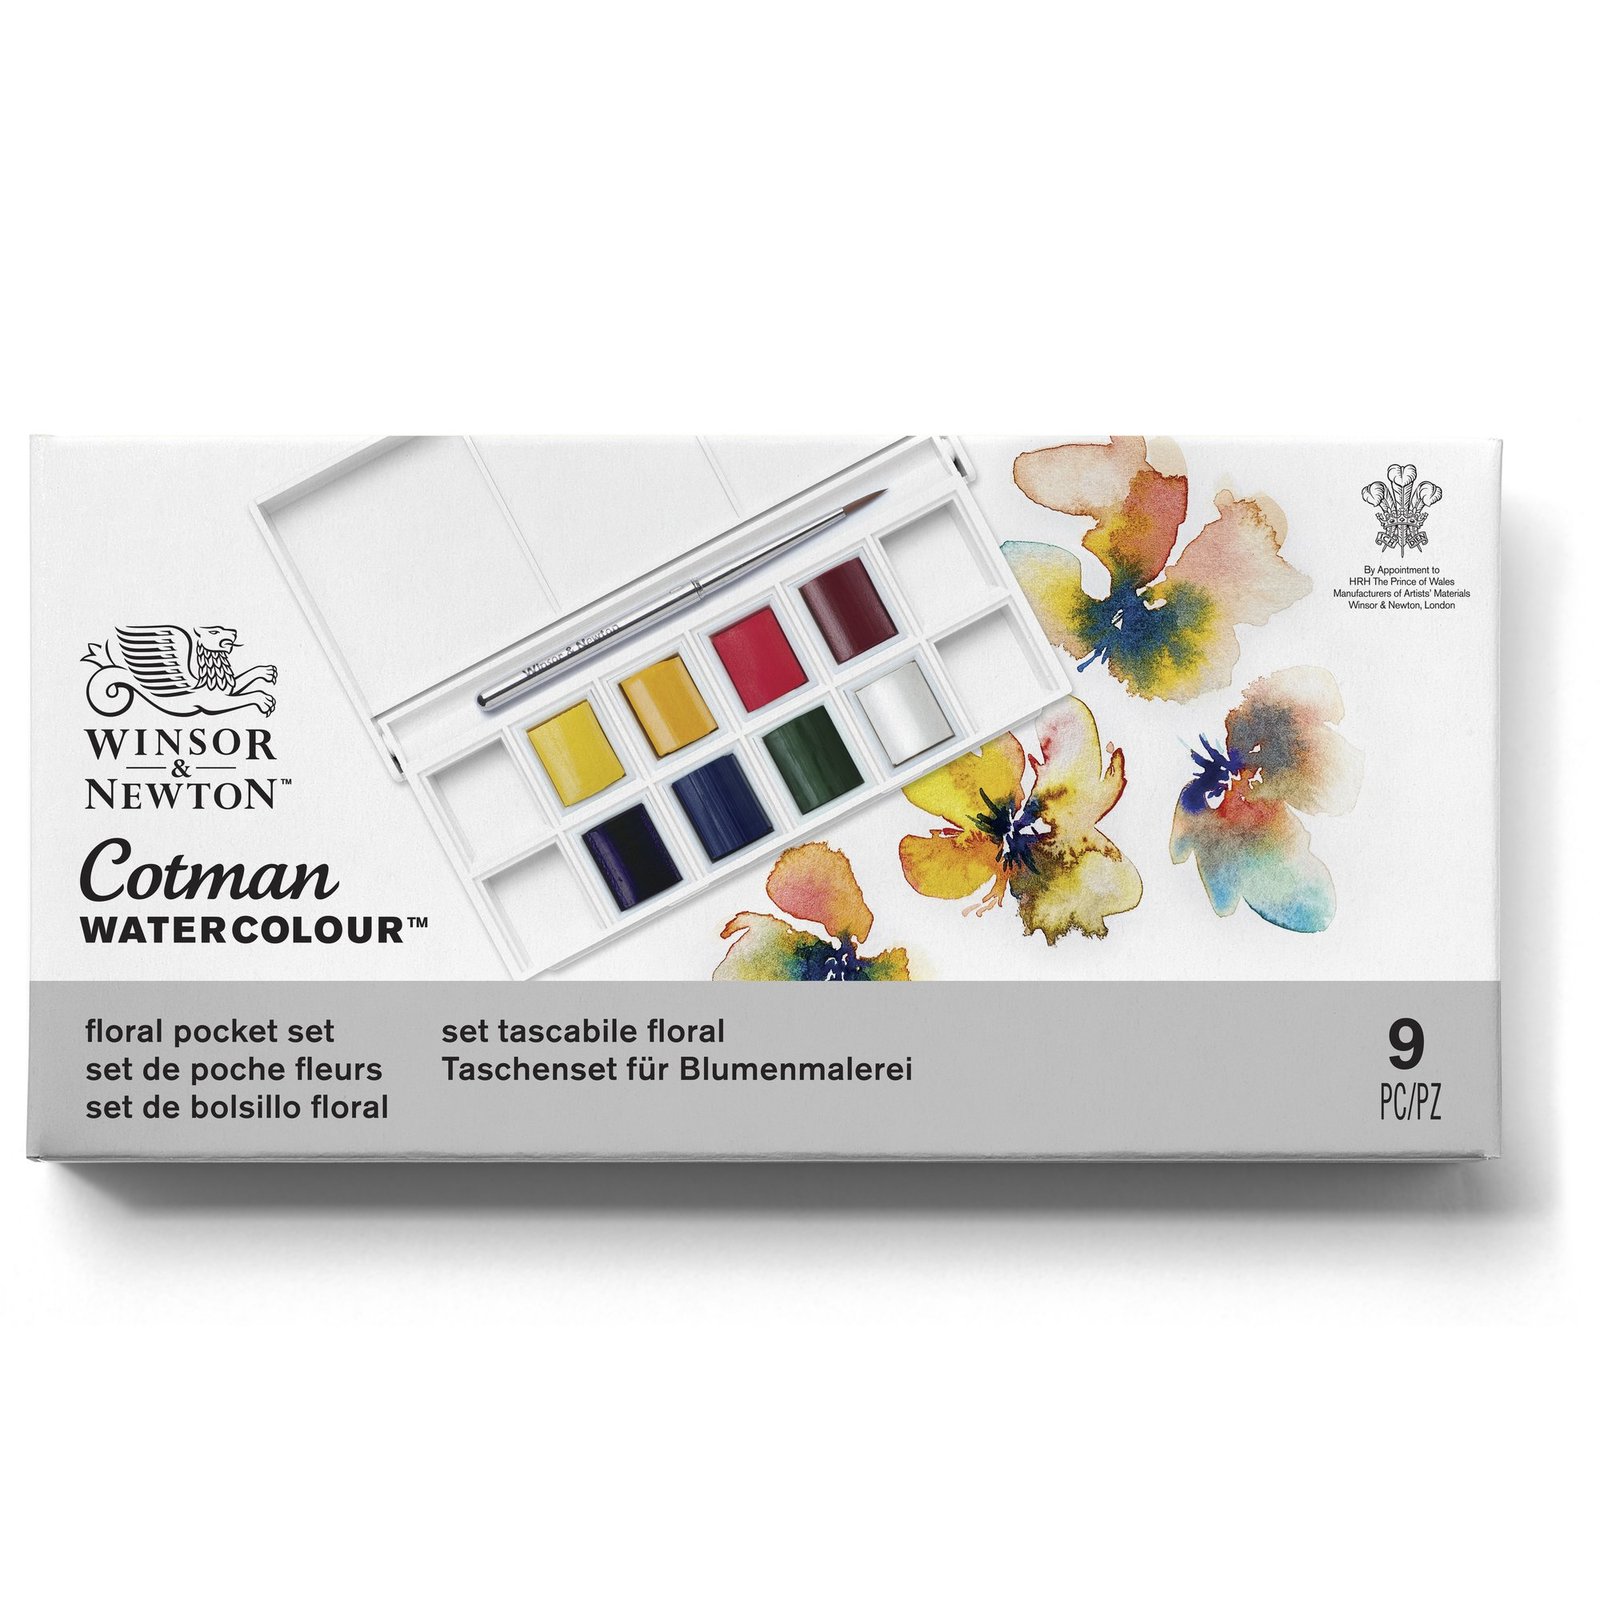 Winsor & Newton Cotman Watercolour Floral Set 8 Half Pans with Brush 0390671